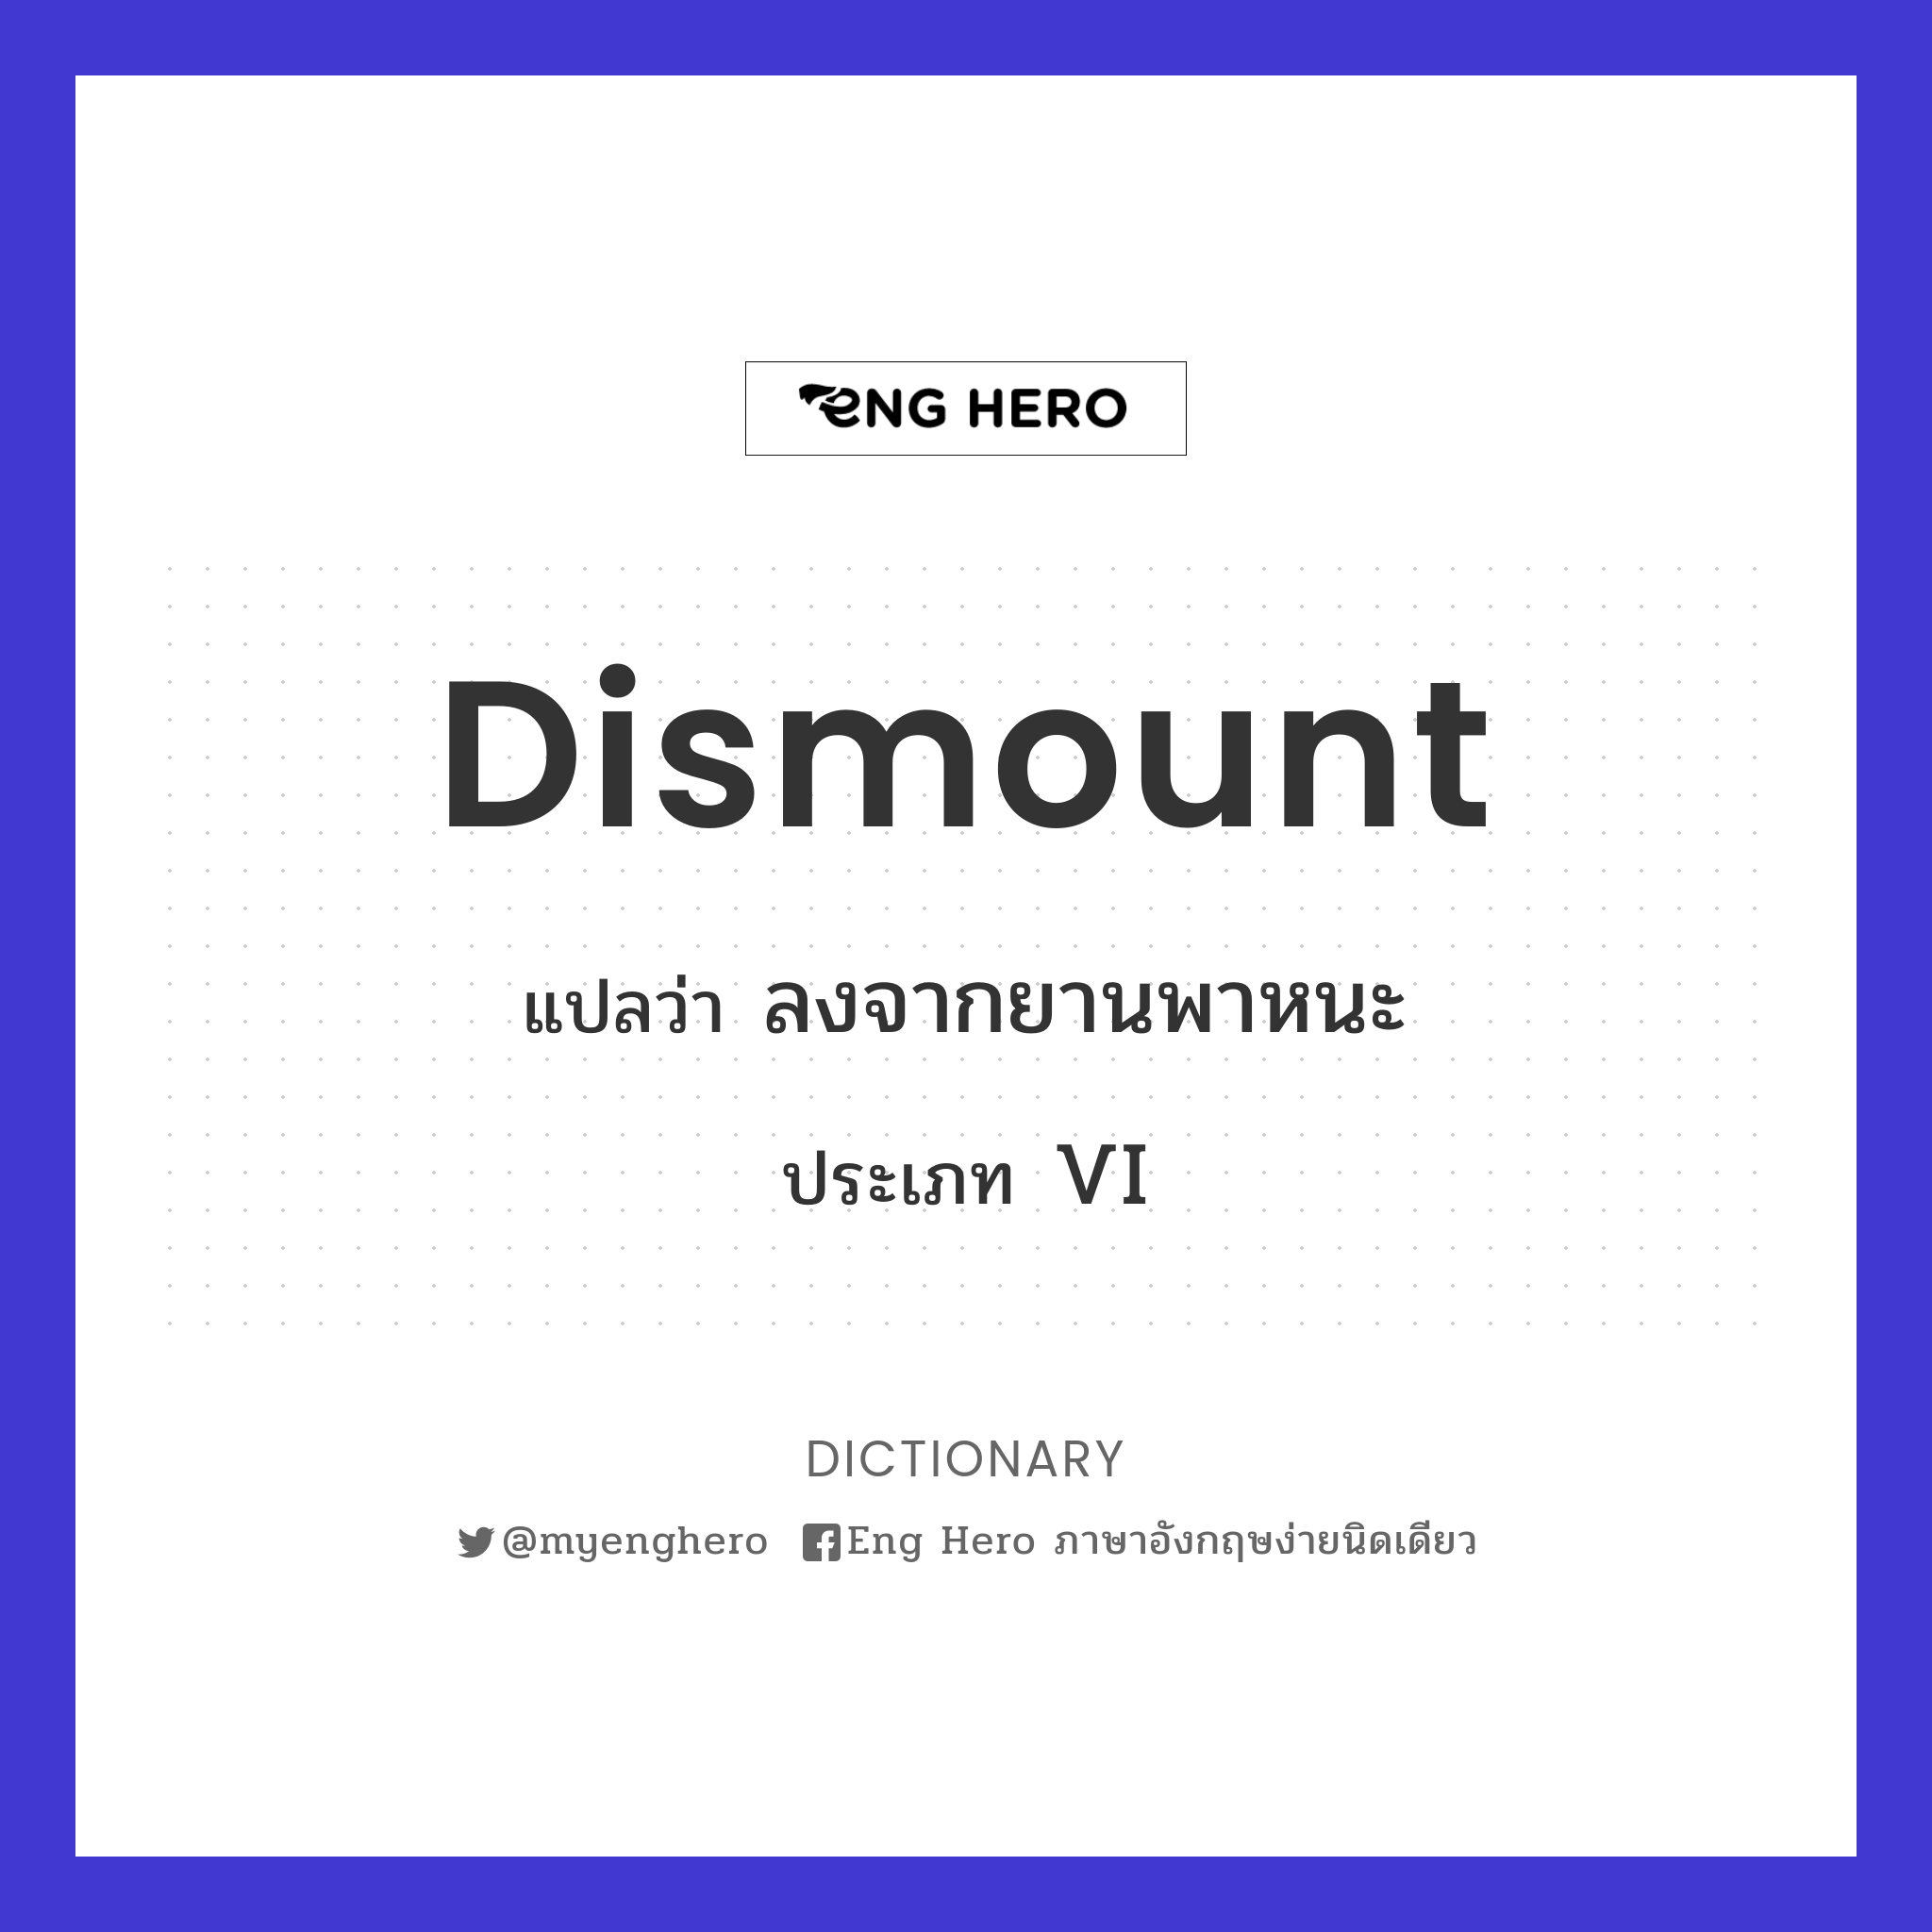 dismount